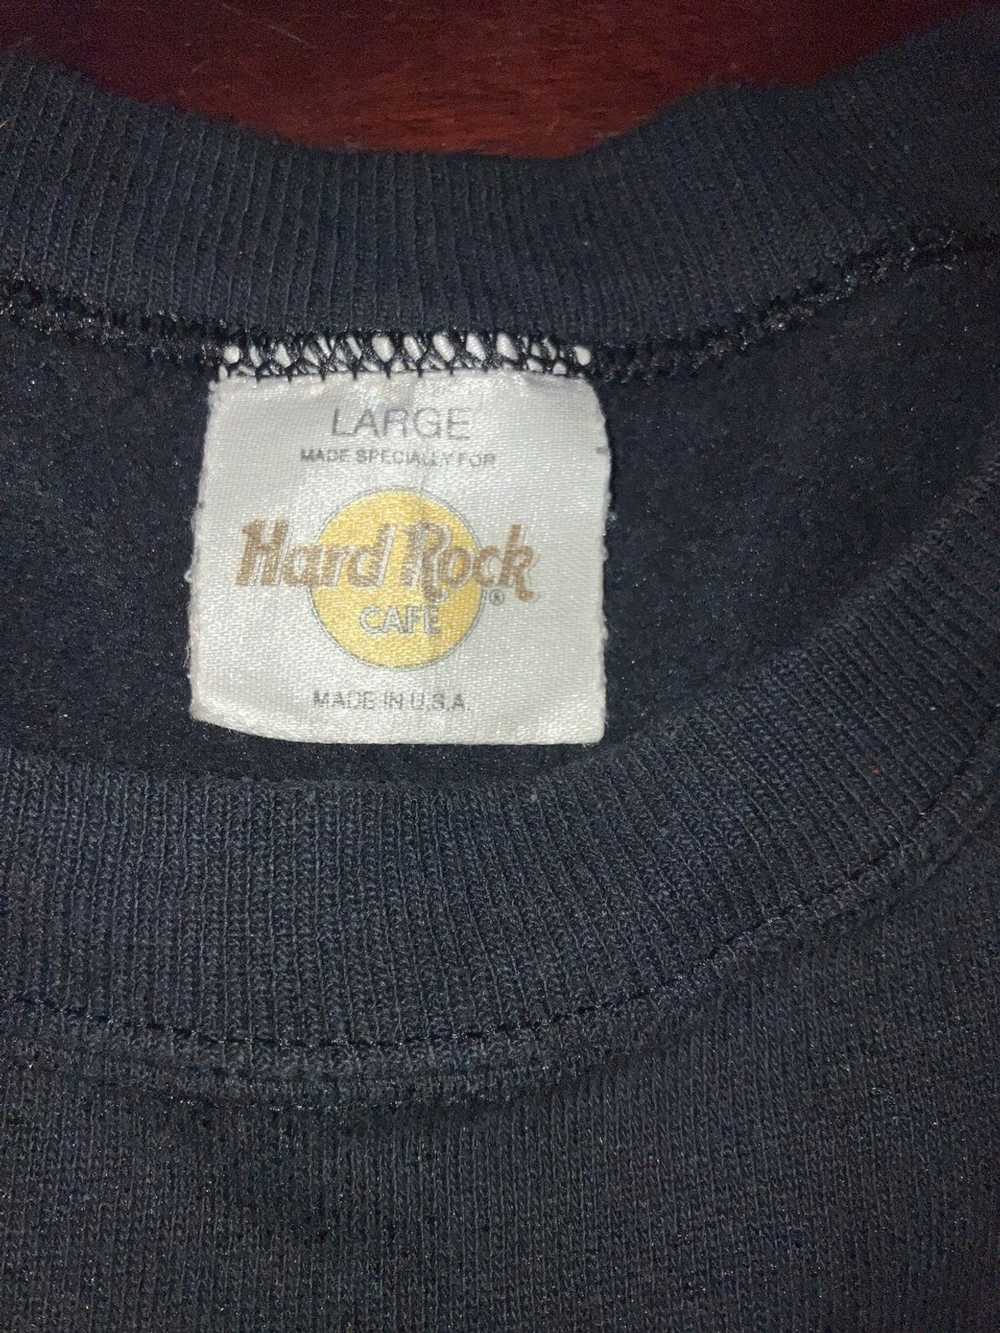 Hard Rock Cafe Vintage 90’s Hard Rock Cafe sweate… - image 1